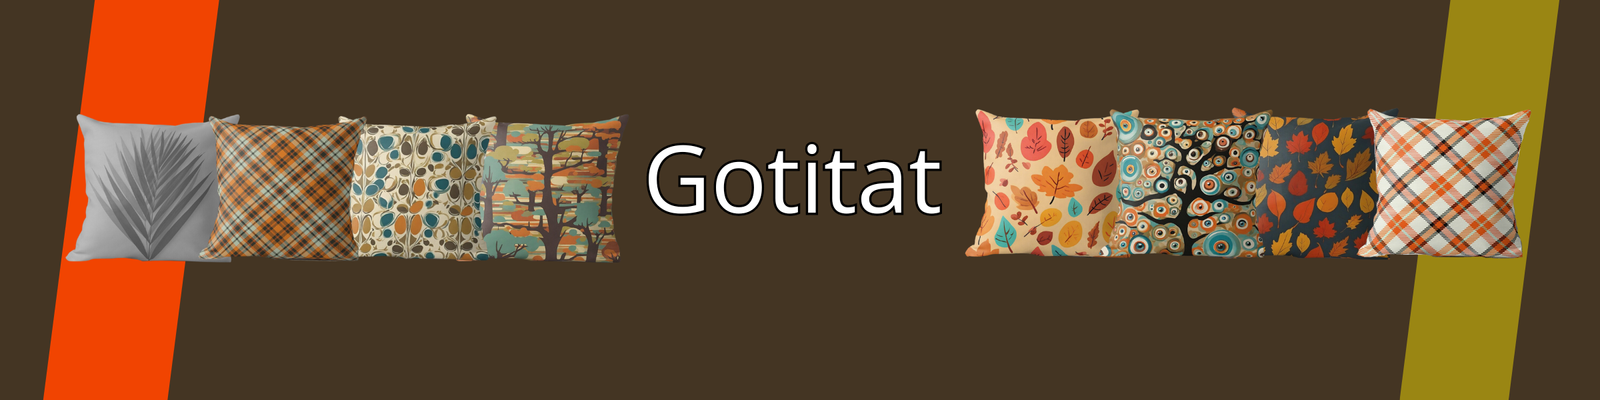 Gotitat Shop | Redbubble Banner